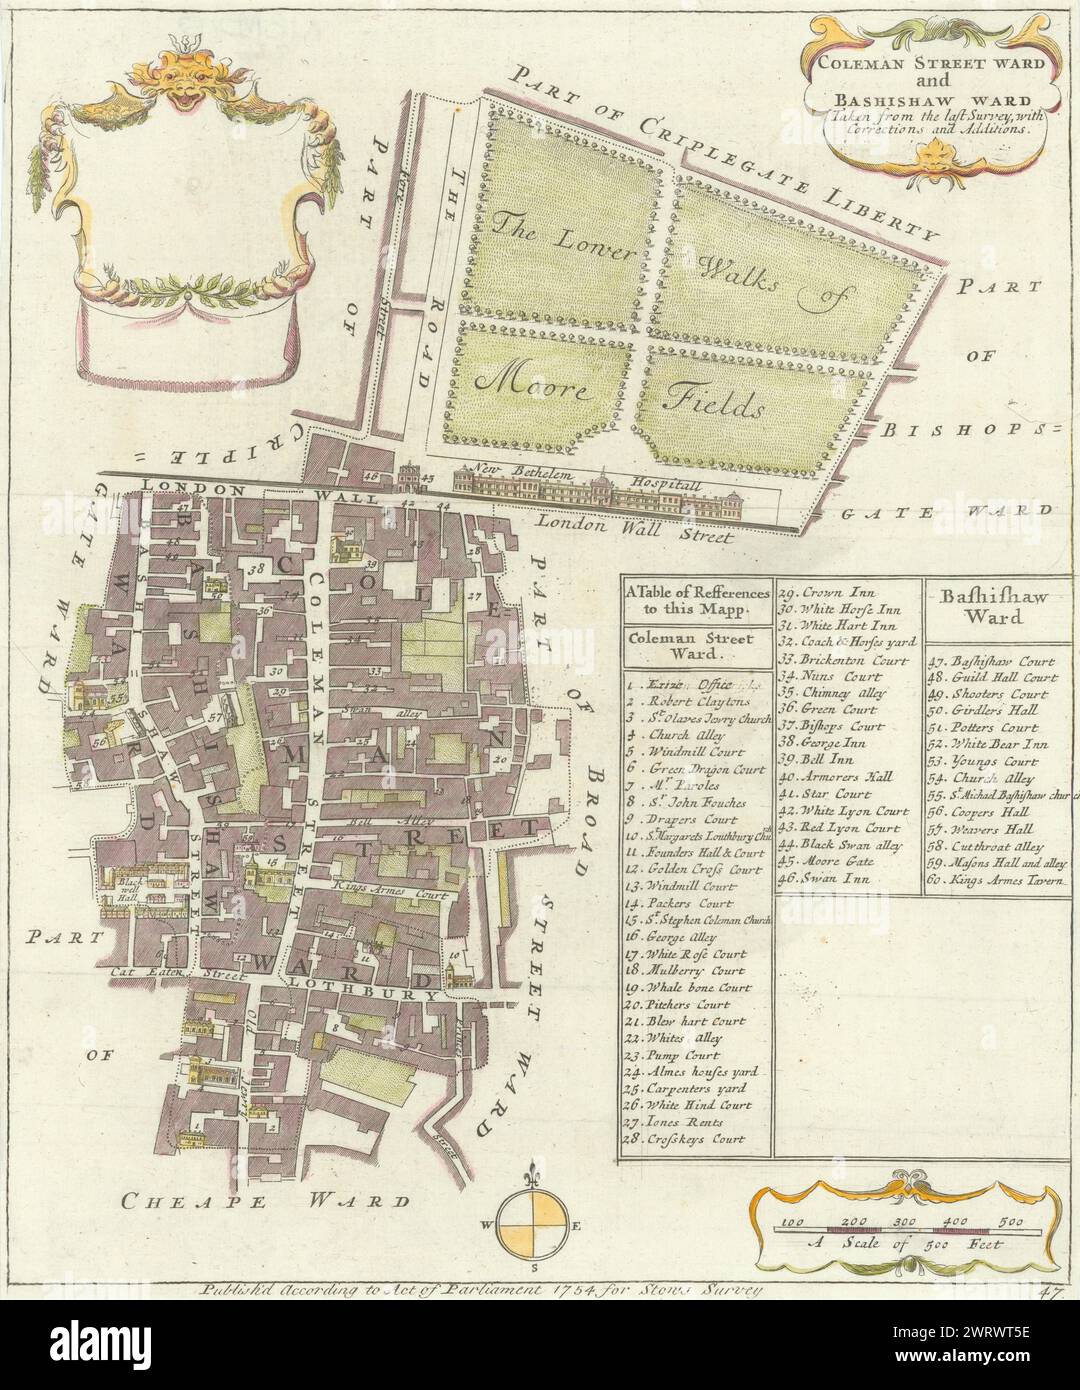 Coleman Street et Bashishaw Wards. Lothbury. Ville de Londres. Carte STOW/STRYPE 1755 Banque D'Images